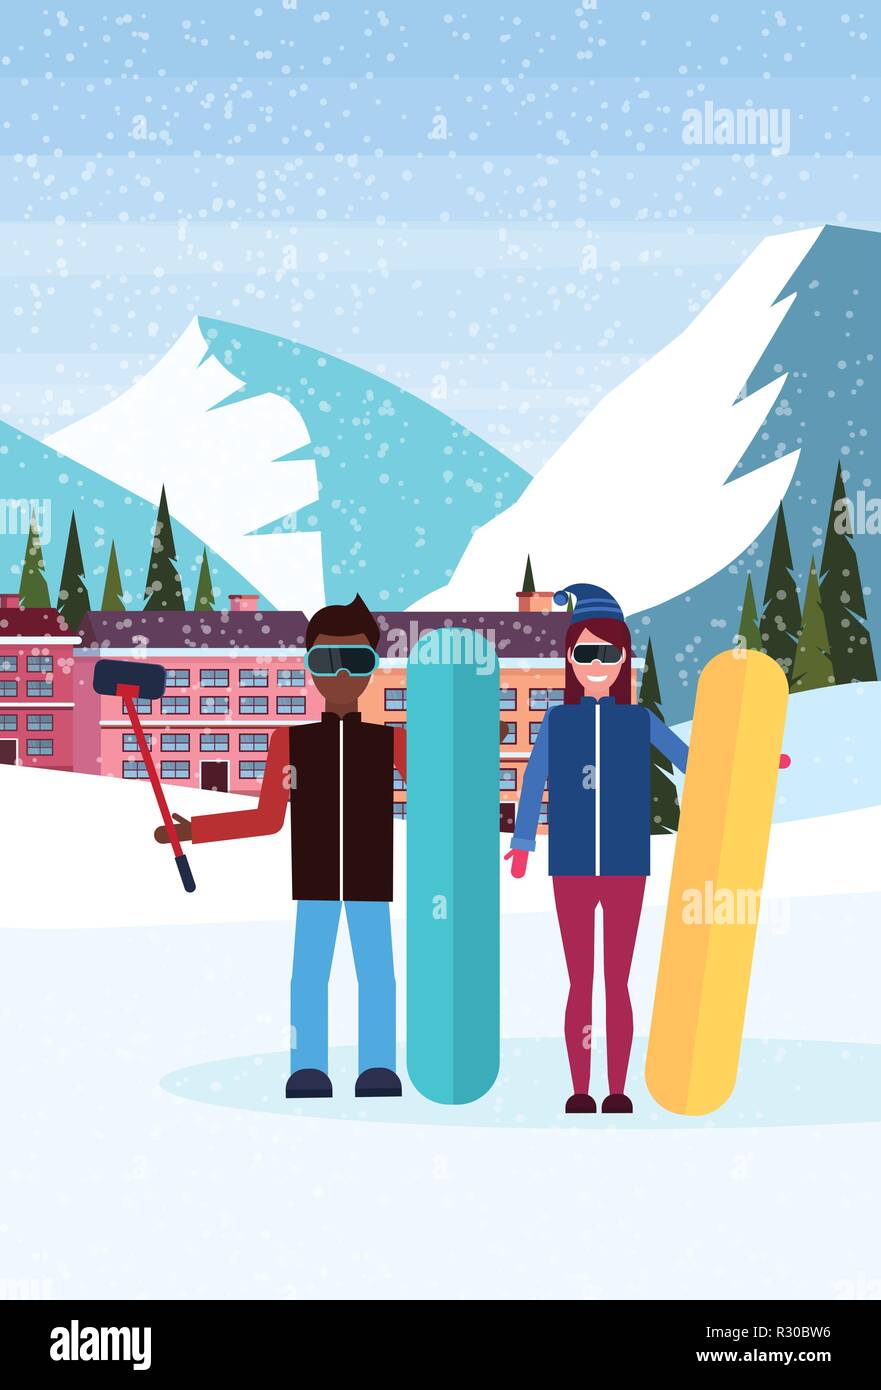 Mélanger les snowboarders course couple ski selfies maisons hôtel téléphérique bâtiments montagnes de neige sapin fond paysage vertical plat concept de vacances d'hiver Illustration de Vecteur